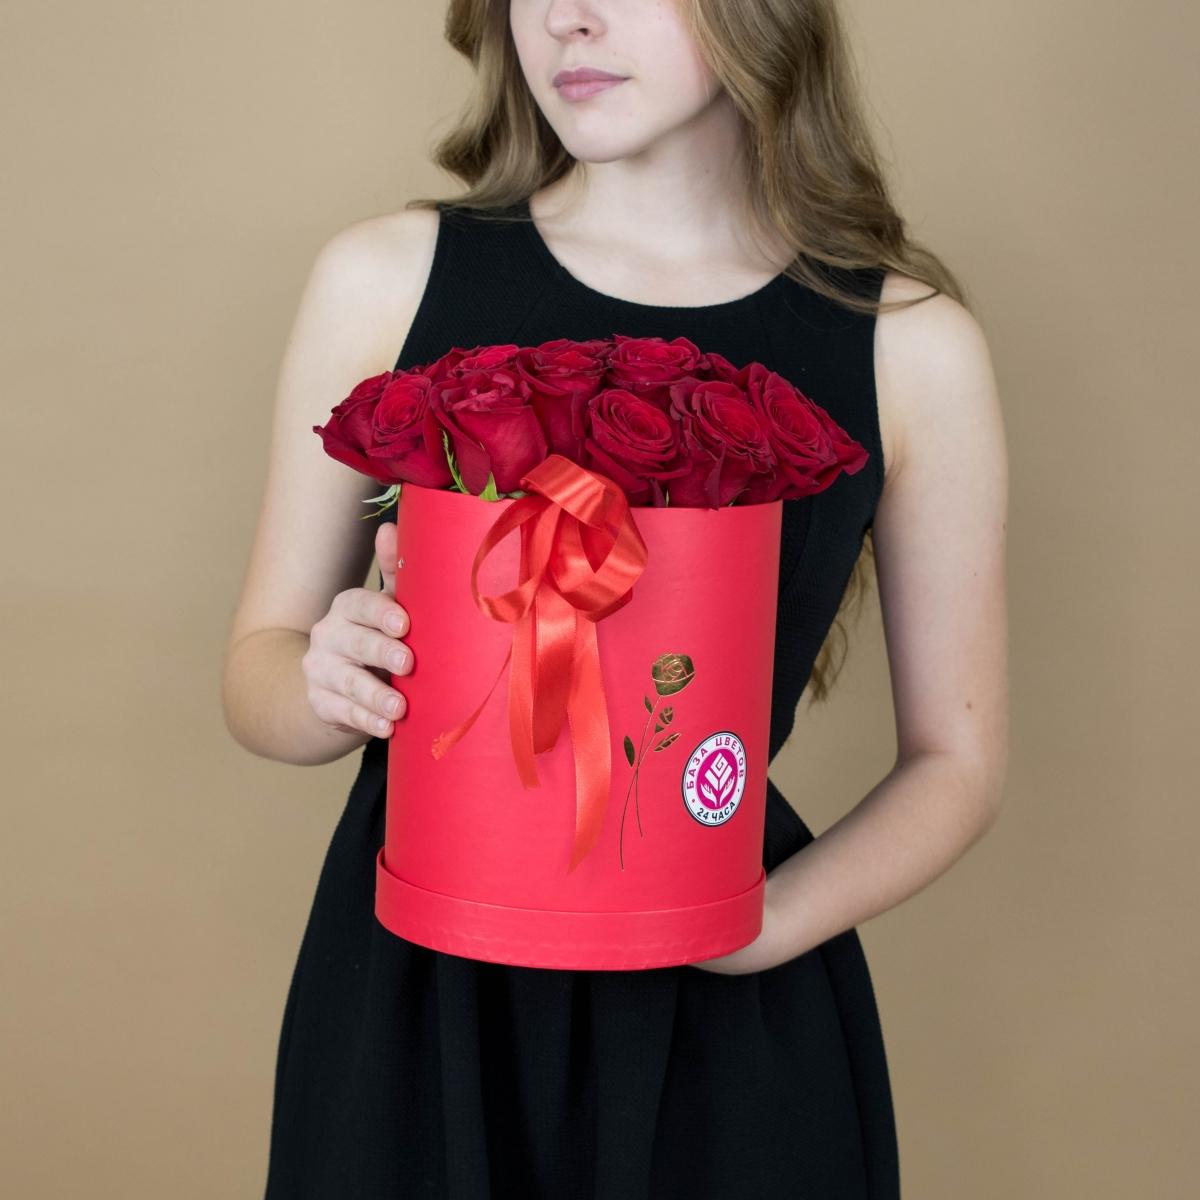 Розы в шляпной коробке красного цвета